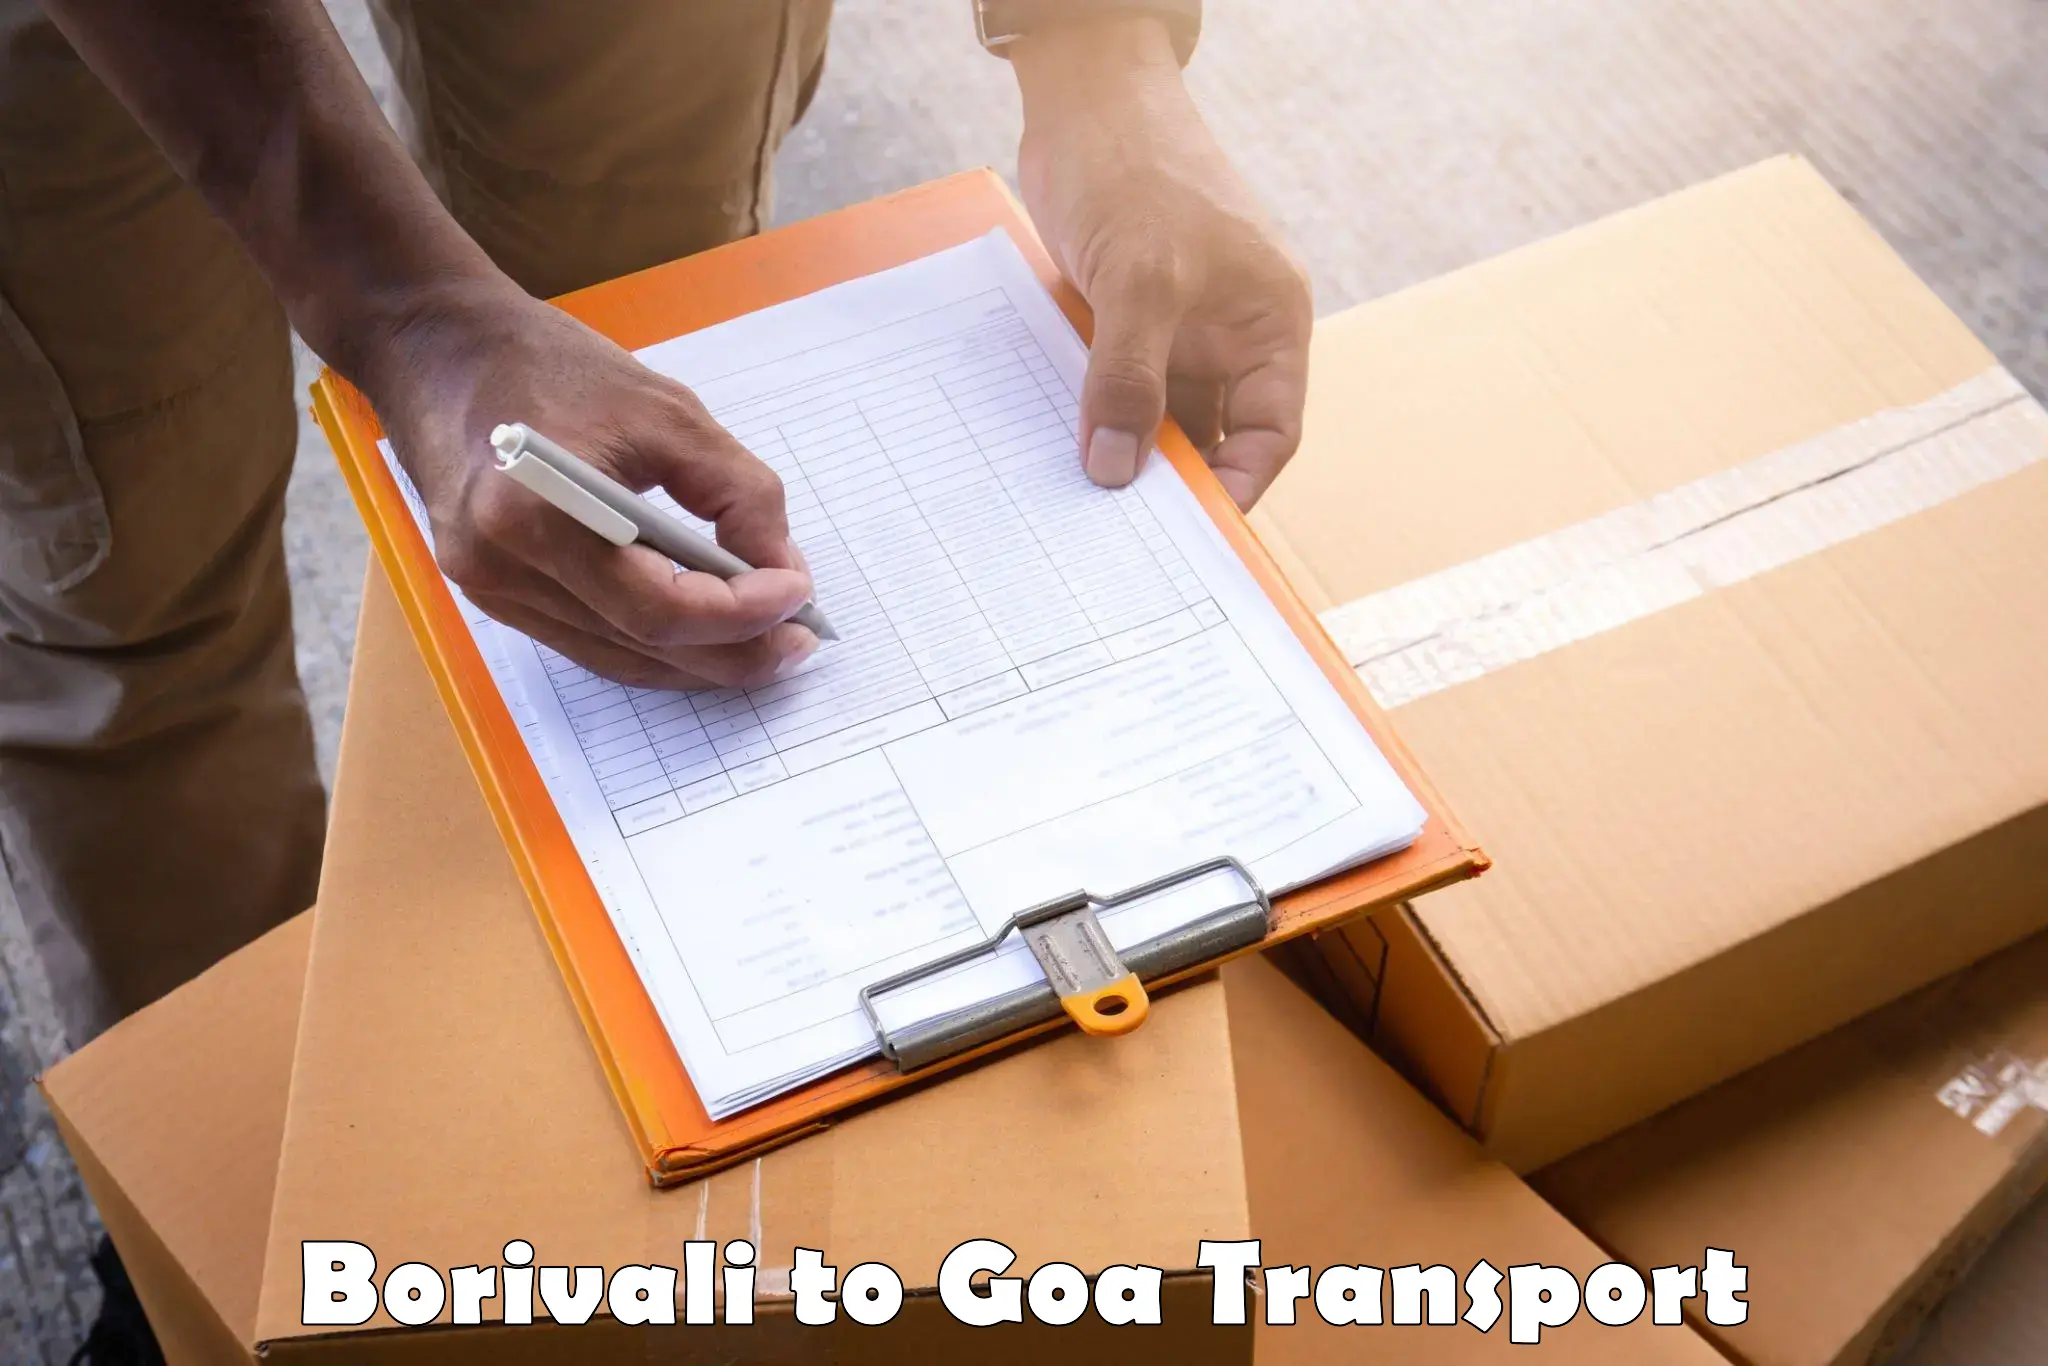 Furniture transport service Borivali to South Goa